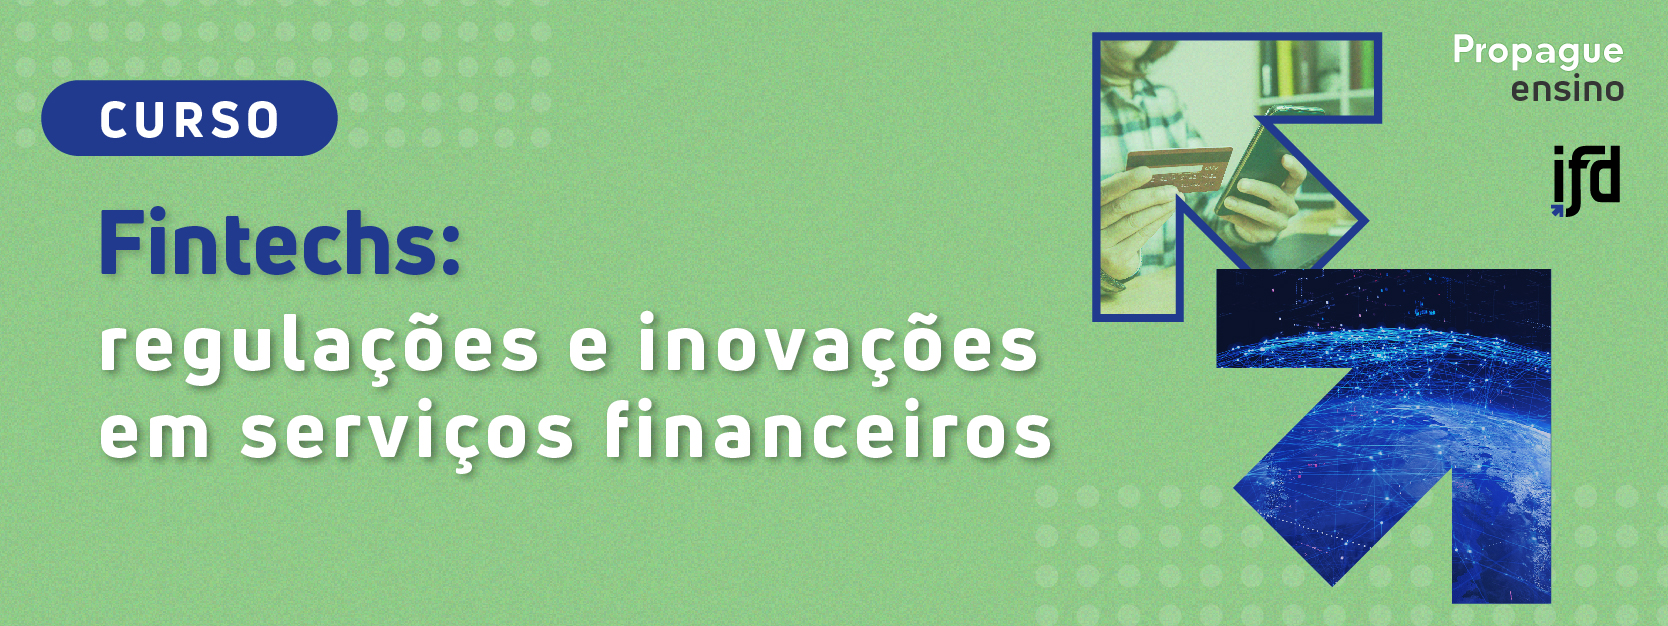 Fintechs: regulações e inovações em serviços financeiros